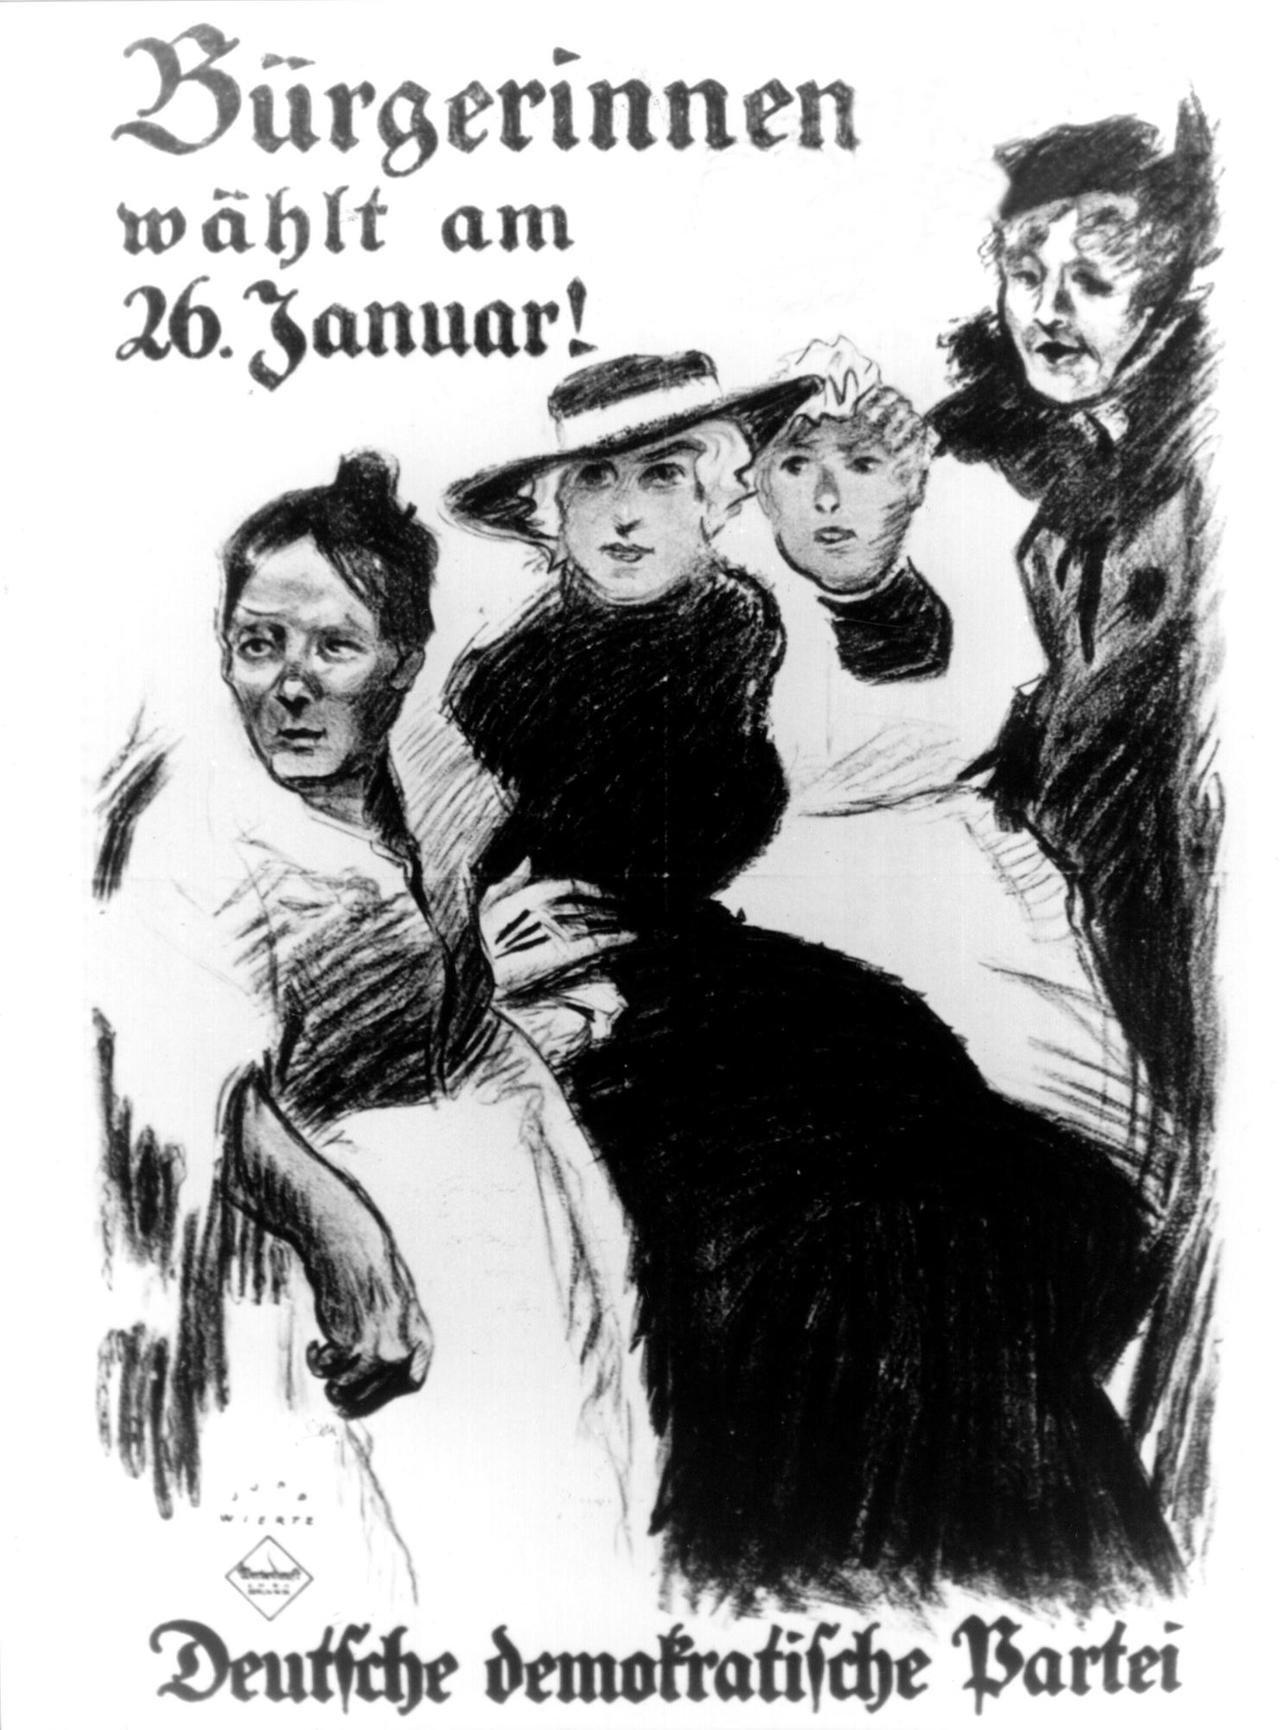 Das Plakat der Deutschen Demokratischen Partei für die Wahlen zur Preußischen Landesversammlung am 26. Januar 1919 fordert die Bürgerinnen zur Wahrnehmung ihrer Rechte auf. Im Jahr 1919 waren die Frauen in Deutschland erstmals wahlberechtigt. | Verwendung weltweit